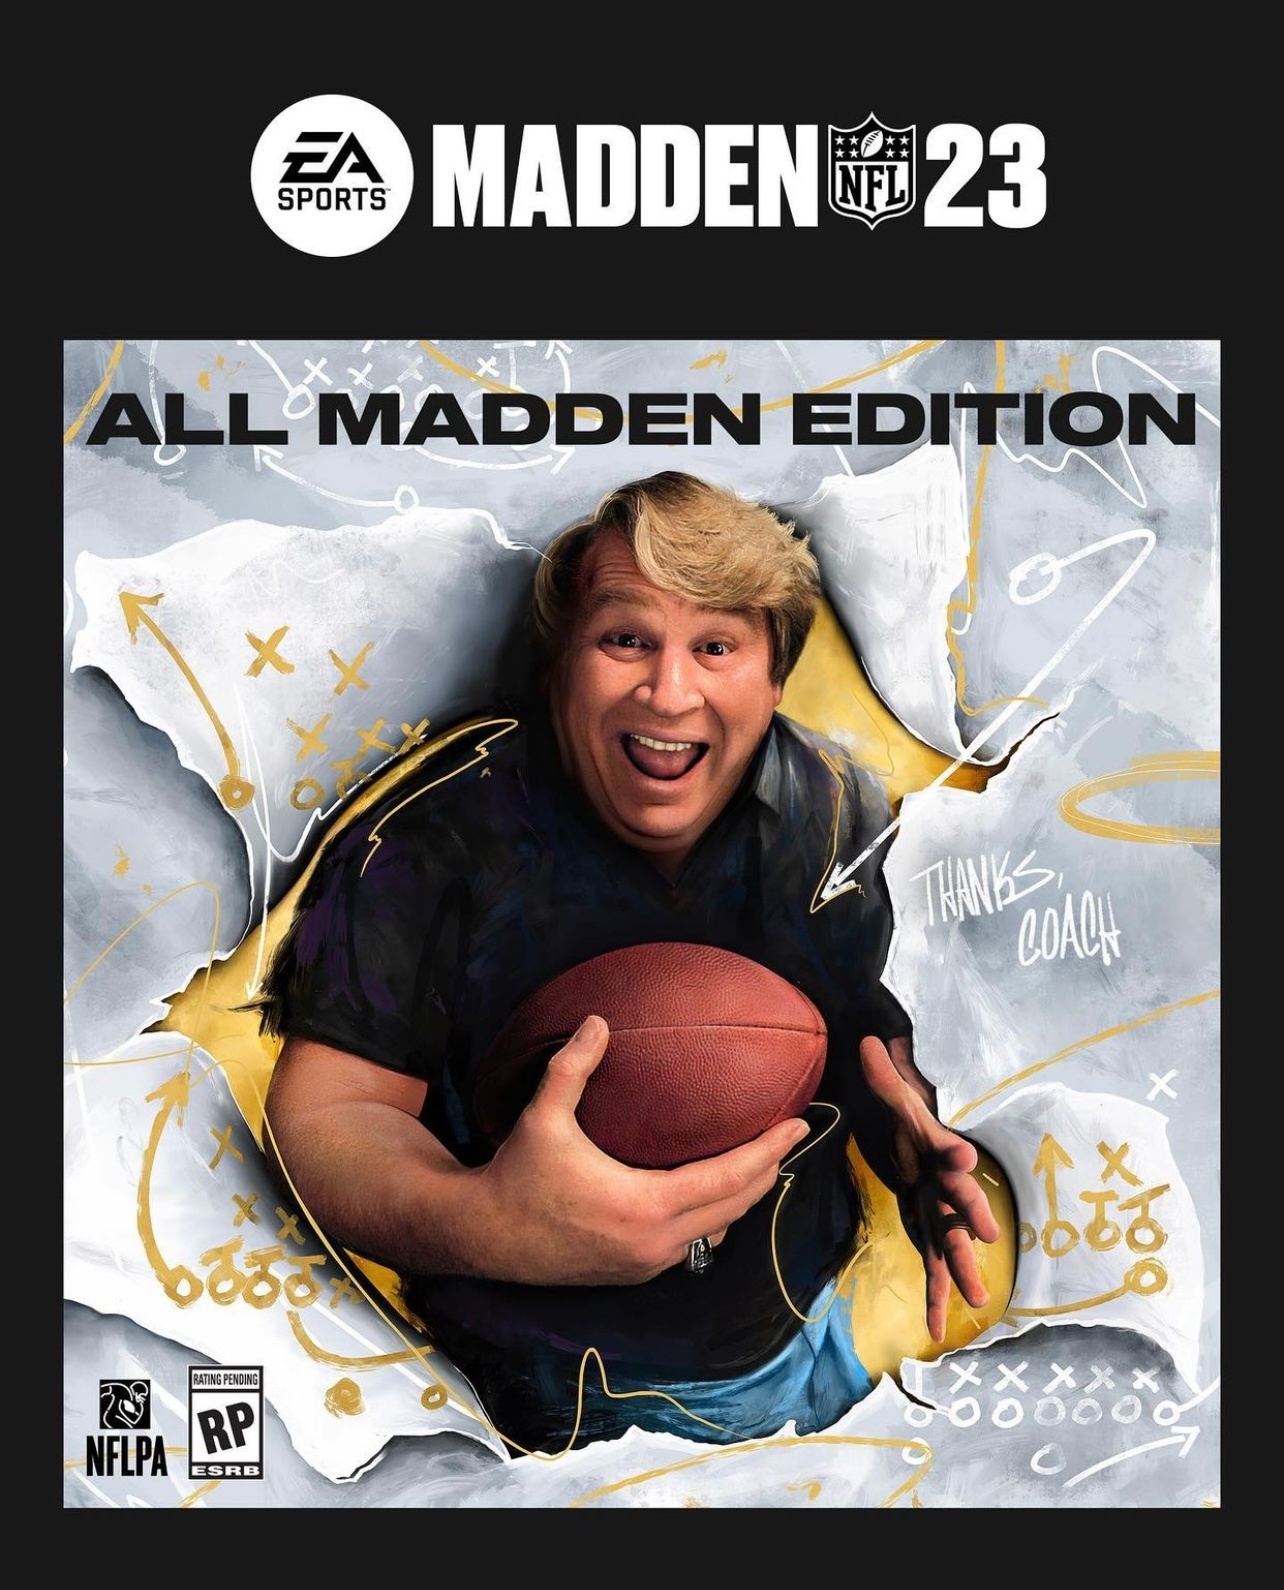 《麥登橄欖球23》封面球星將是約翰·麥登本人